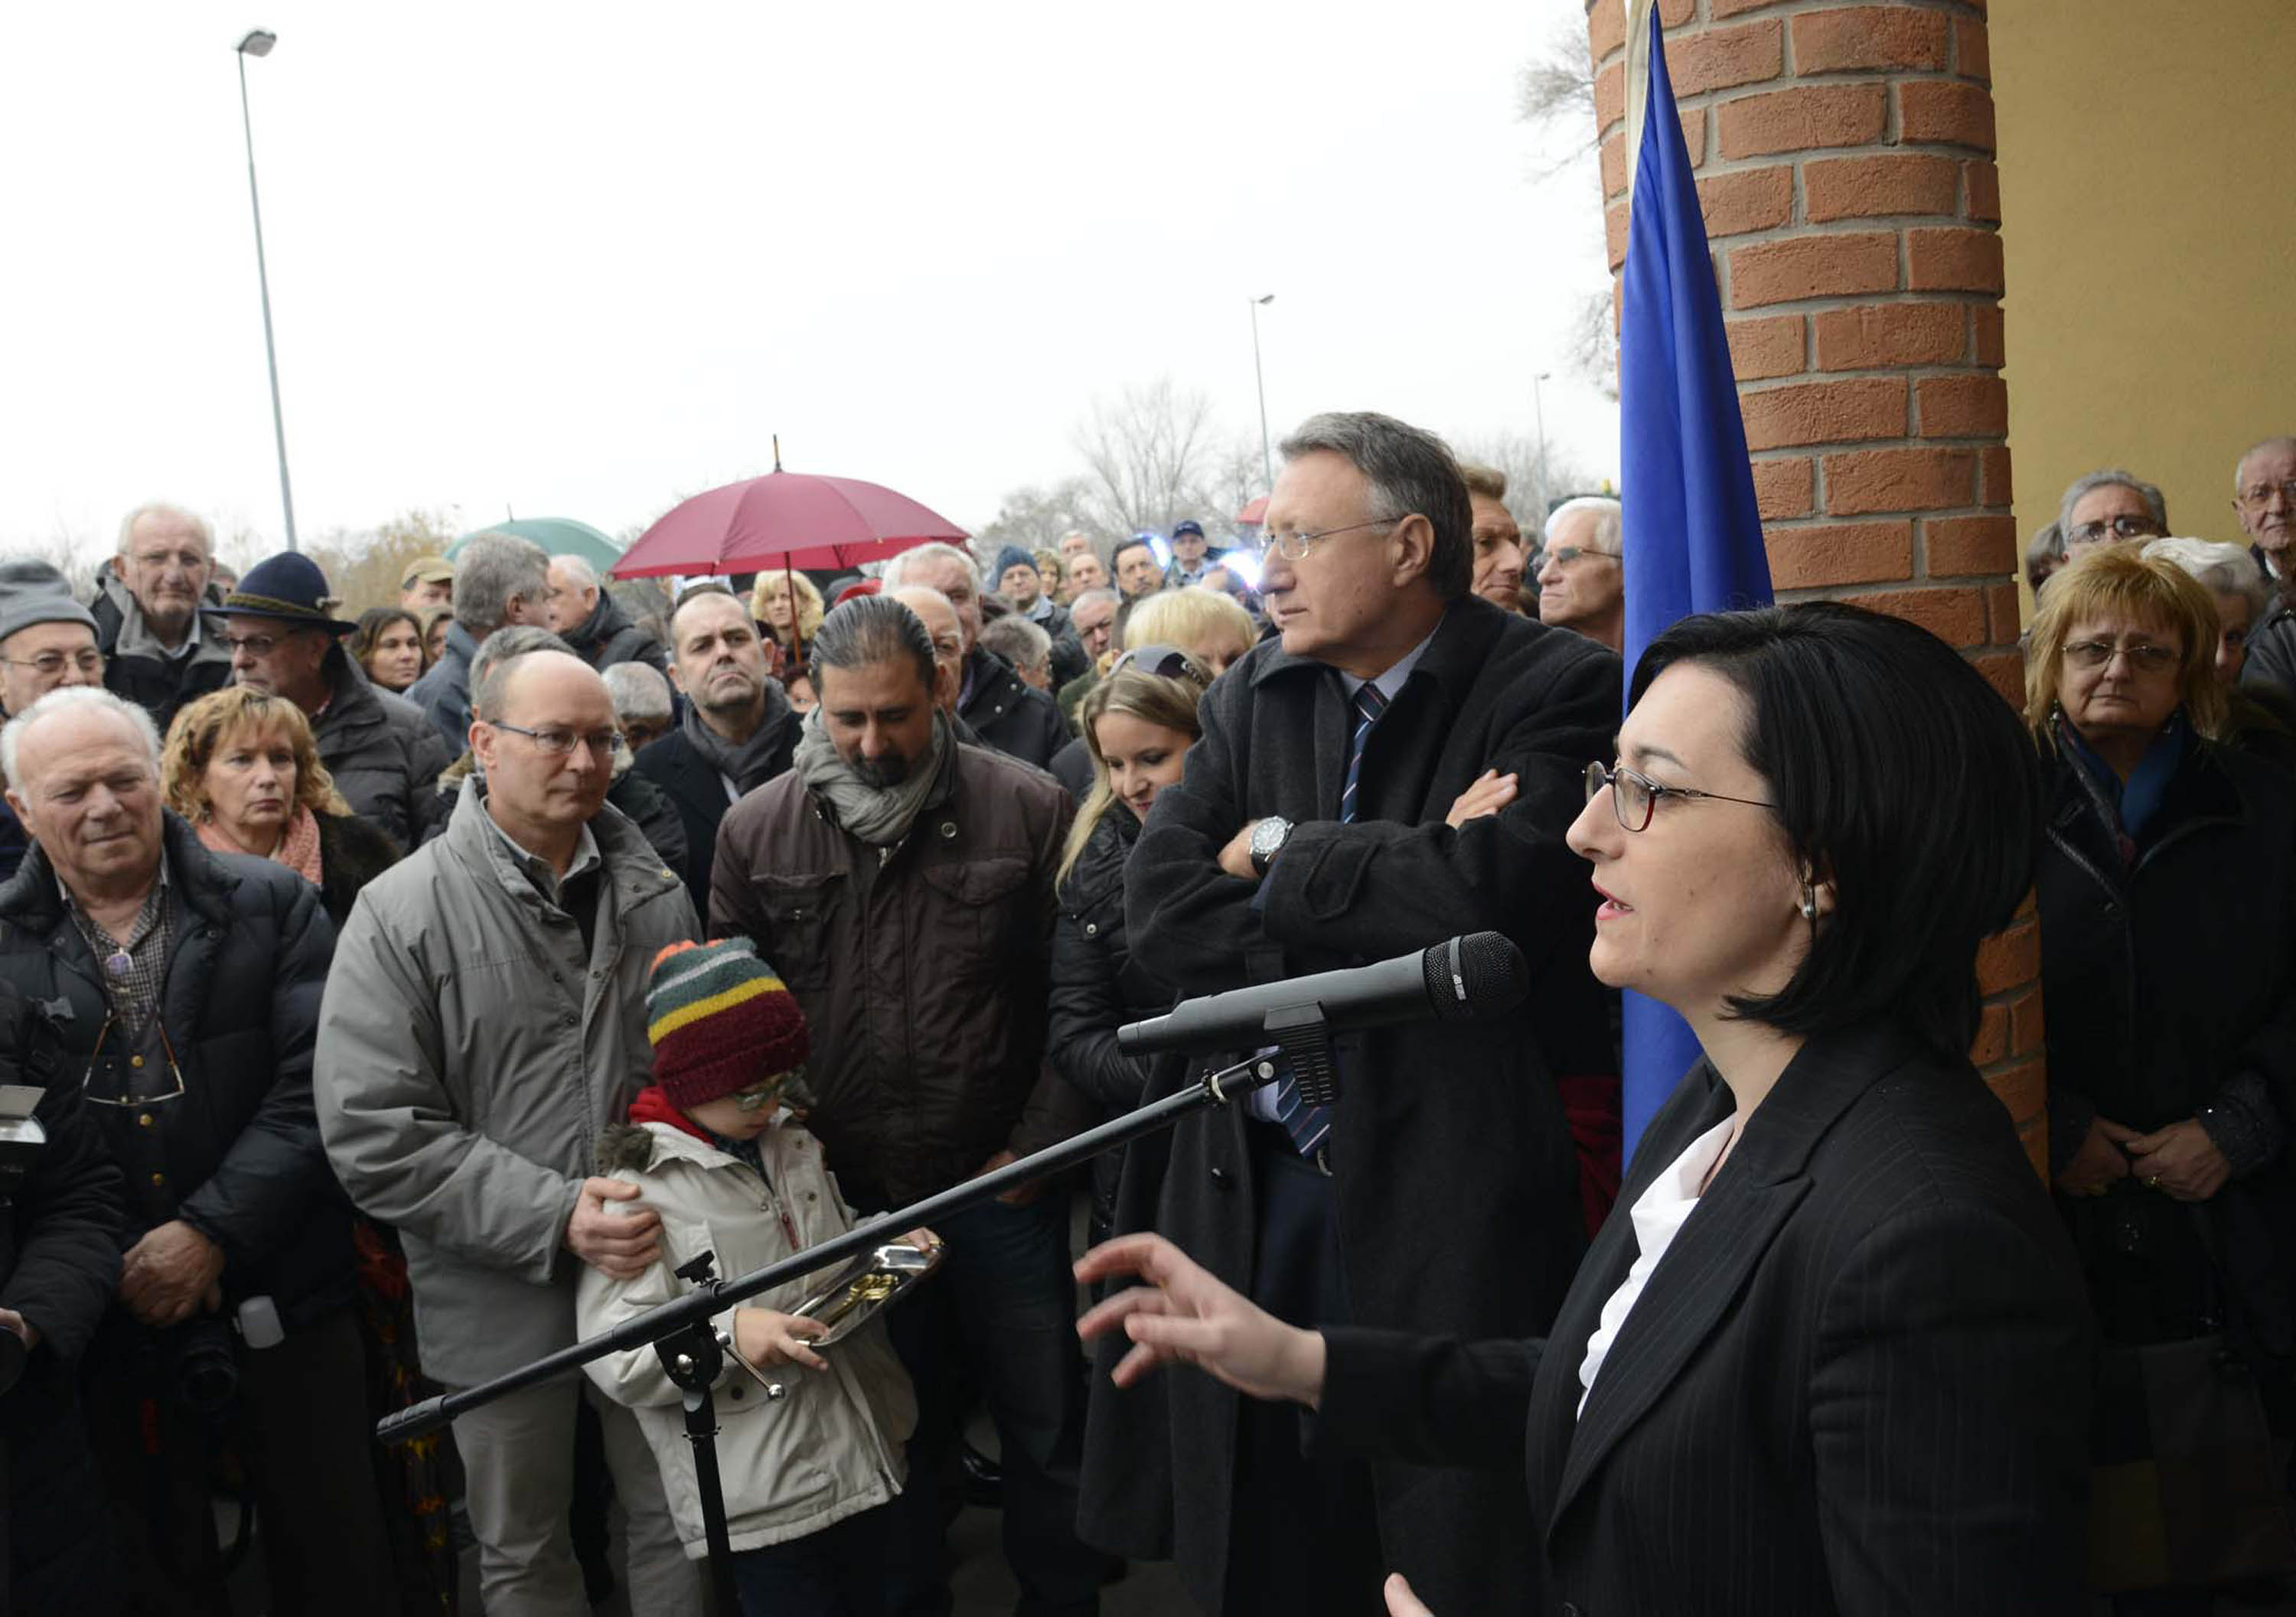 Sara Vito (Assessore regionale Ambiente ed Energia) interviene all'inaugurazione del complesso delle Terme Romane - Monfalcone 21/12/2013